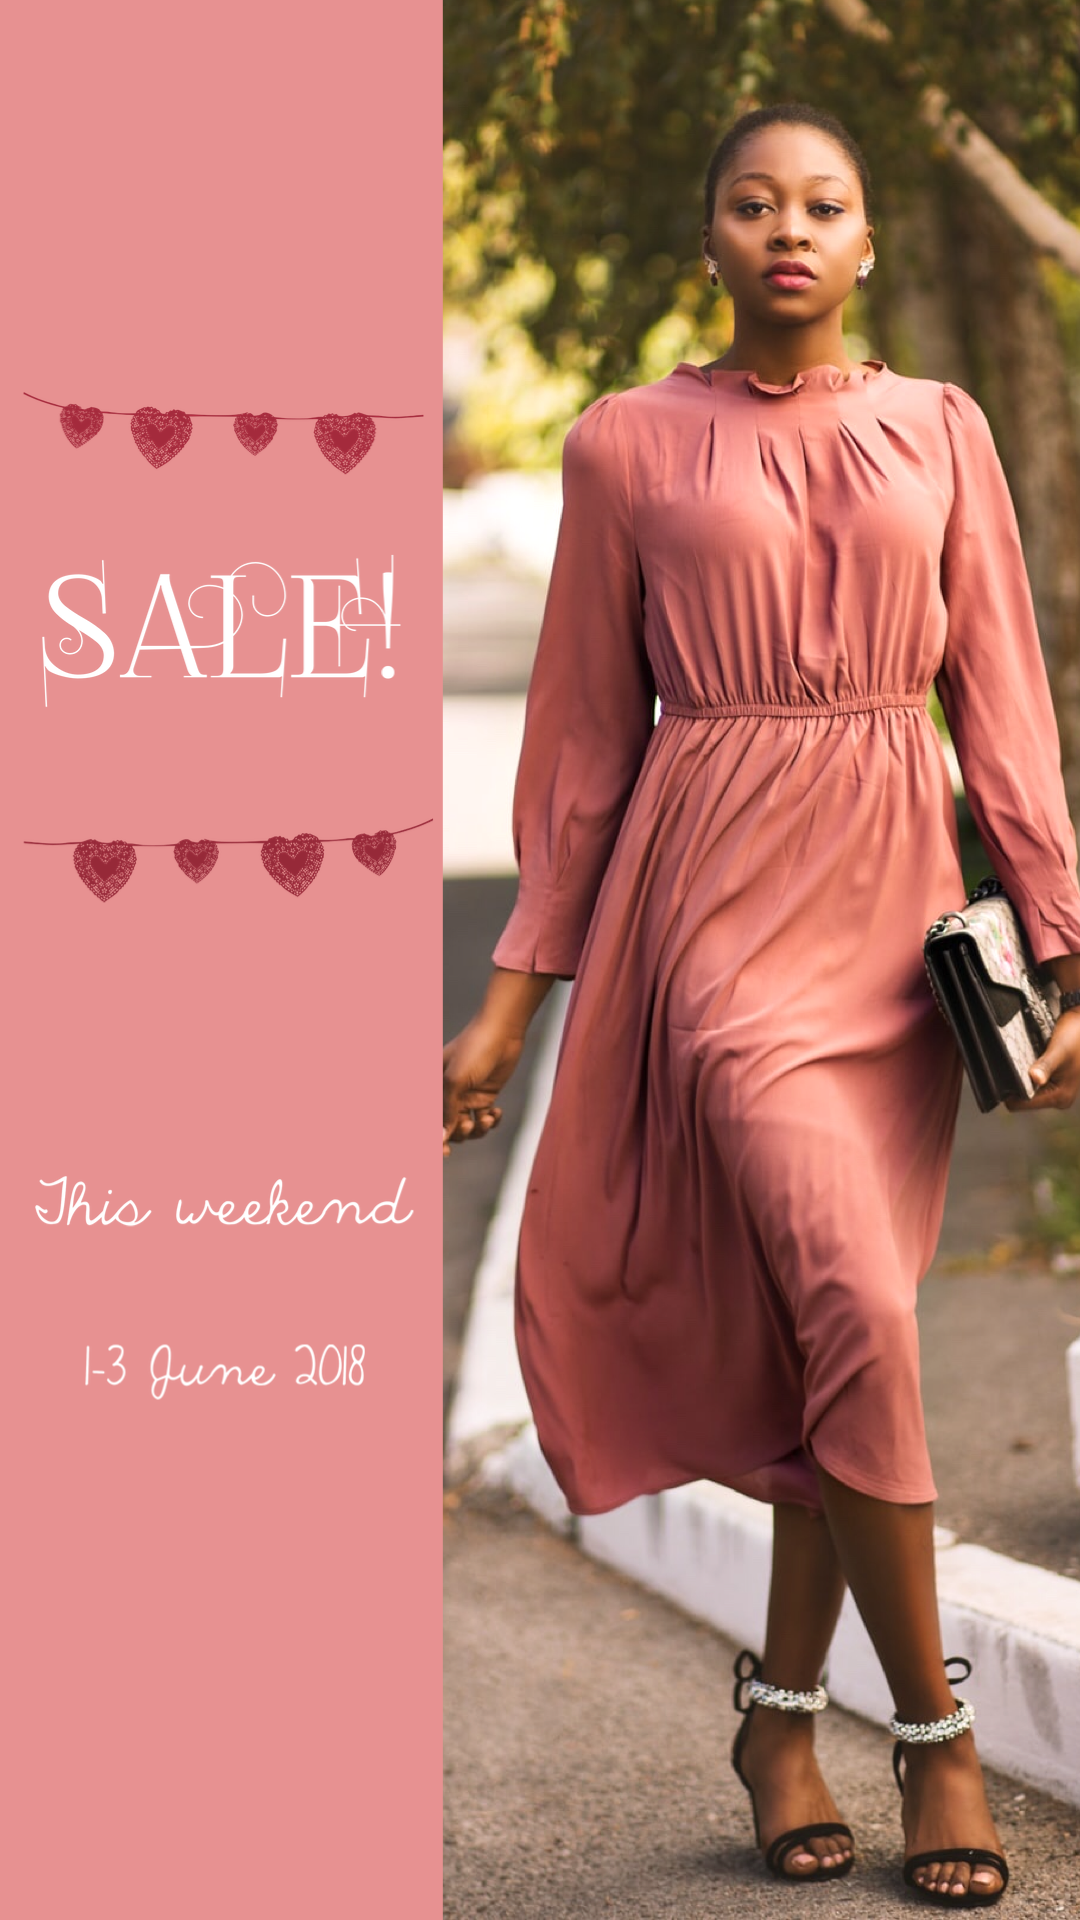 Women in fashionable pink dress sale brochure template